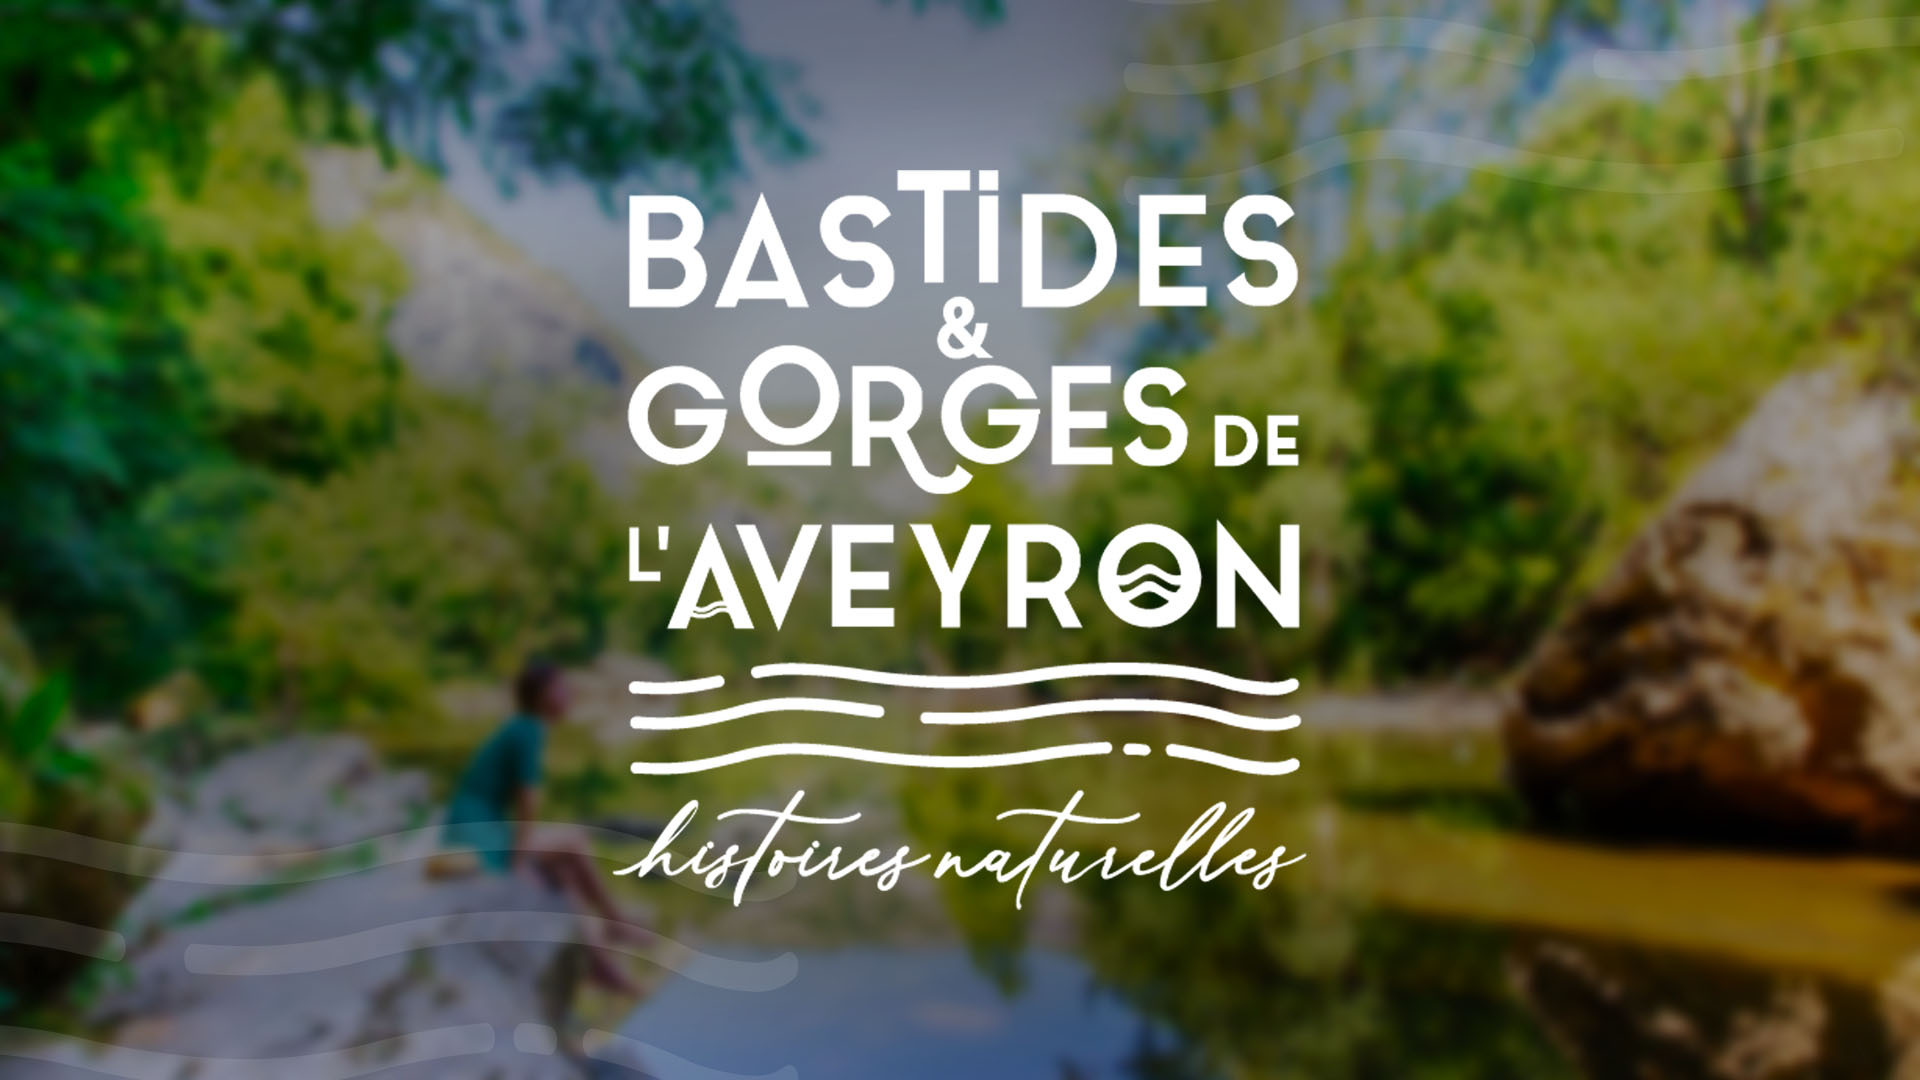 Bastides en Gorges de Aveyron